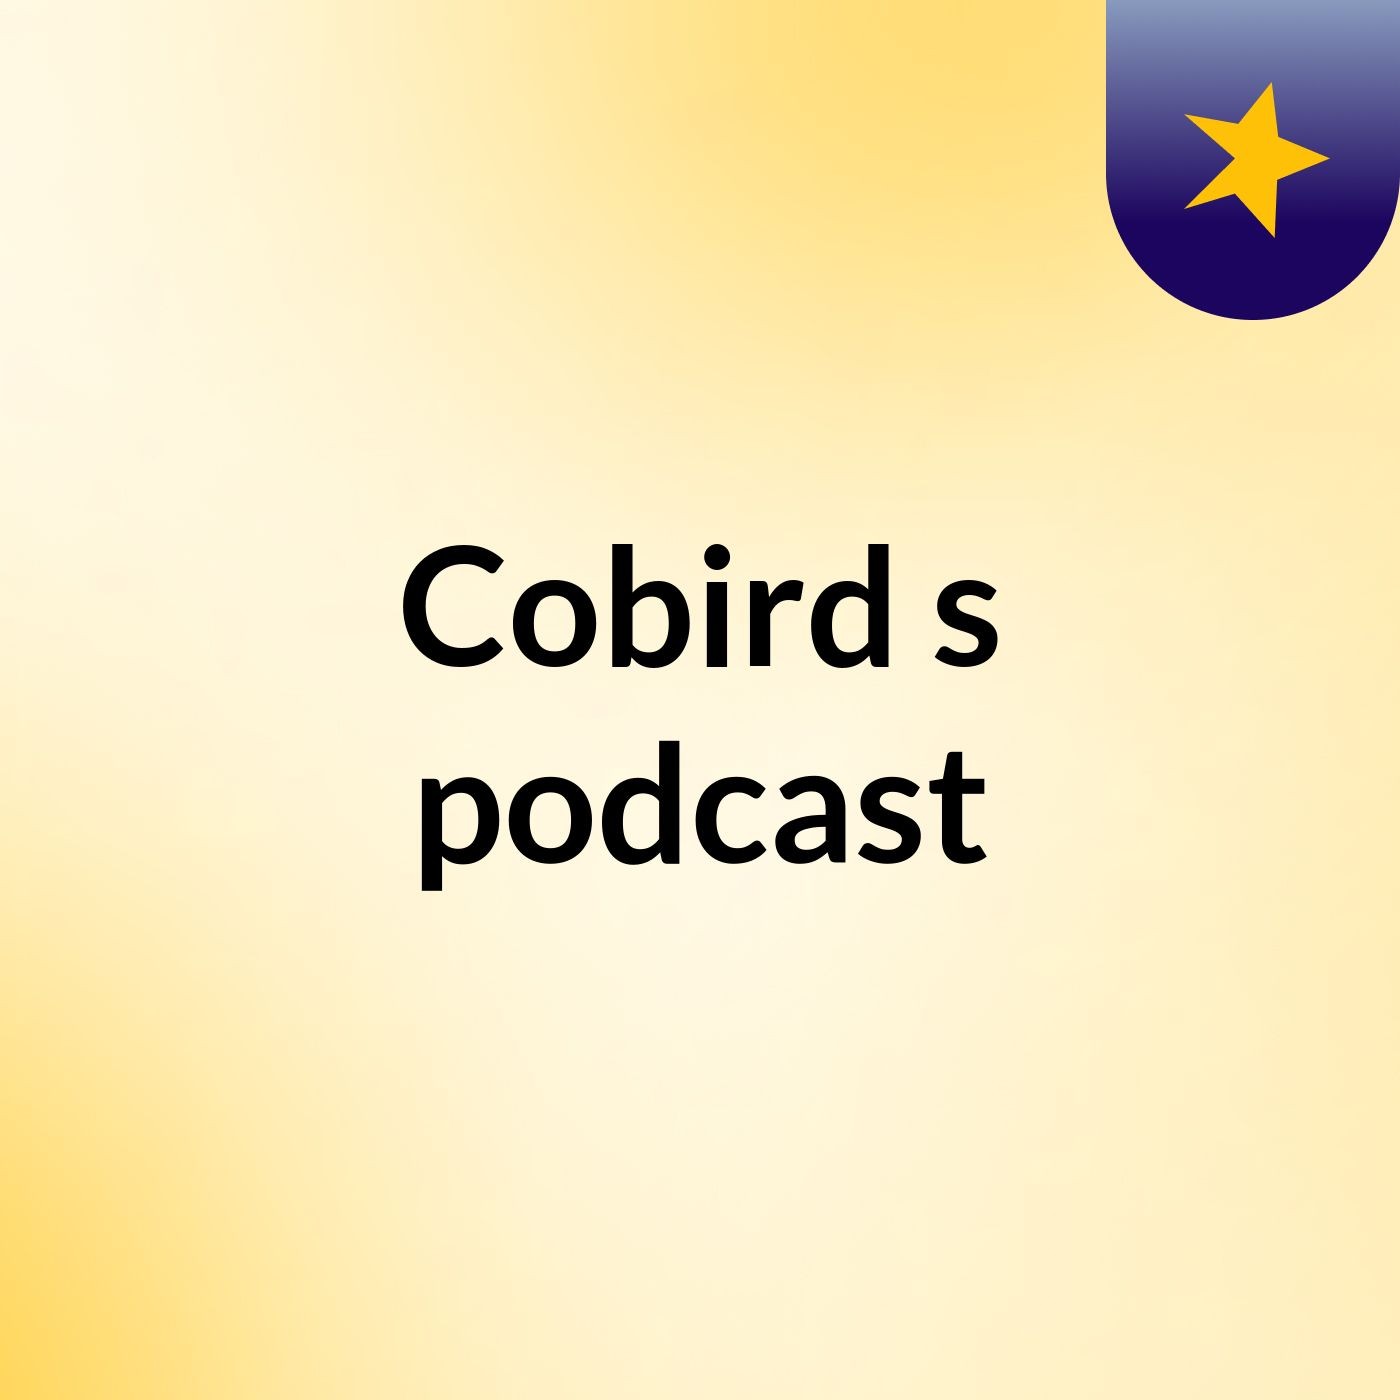 Cobird's podcast